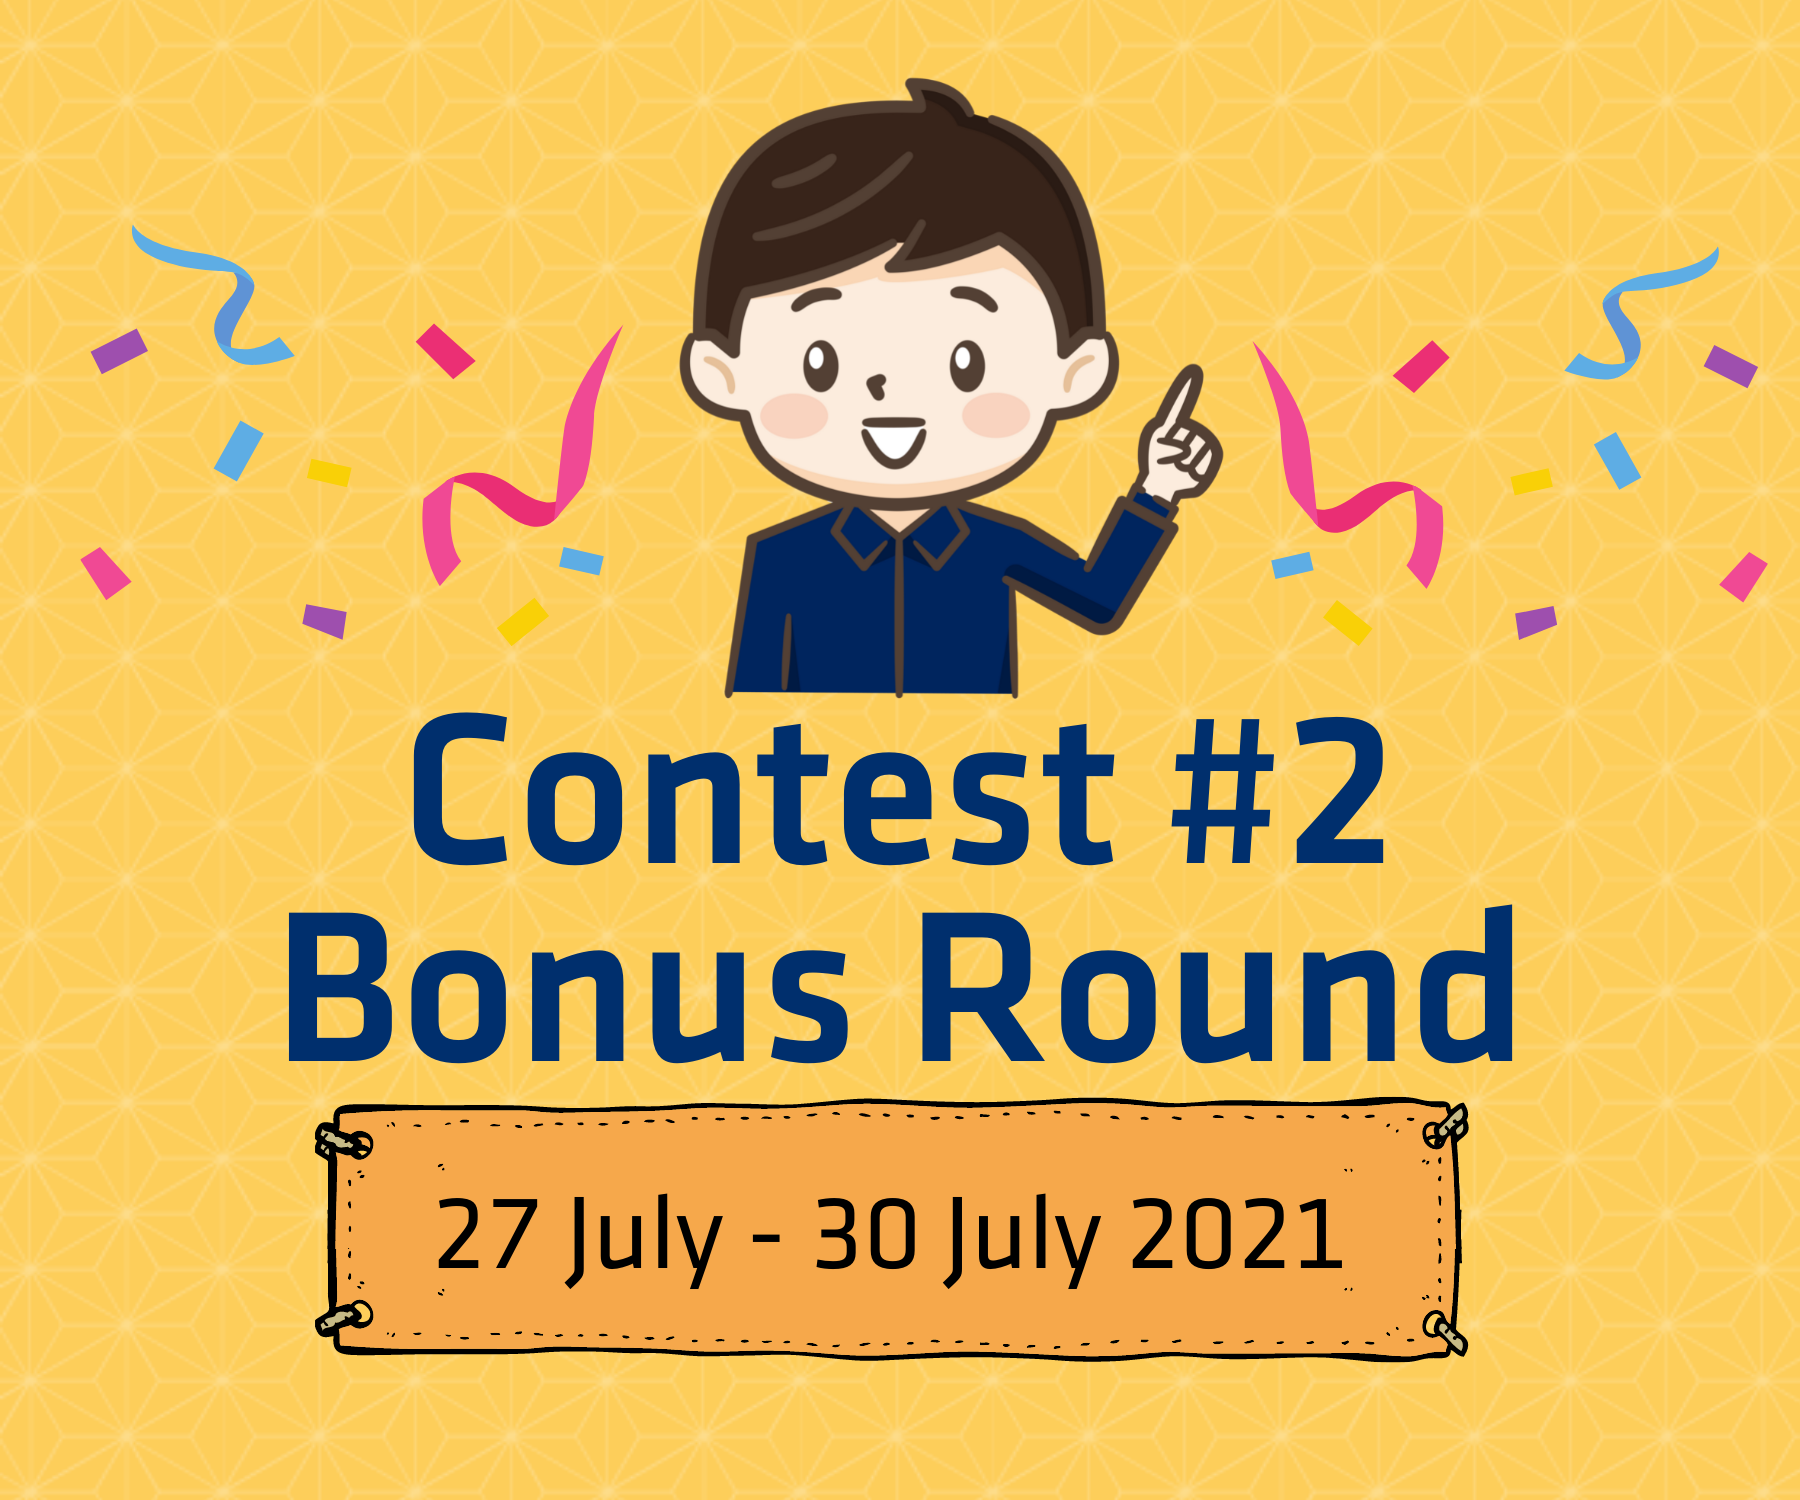 Contest #2 Bonus Round